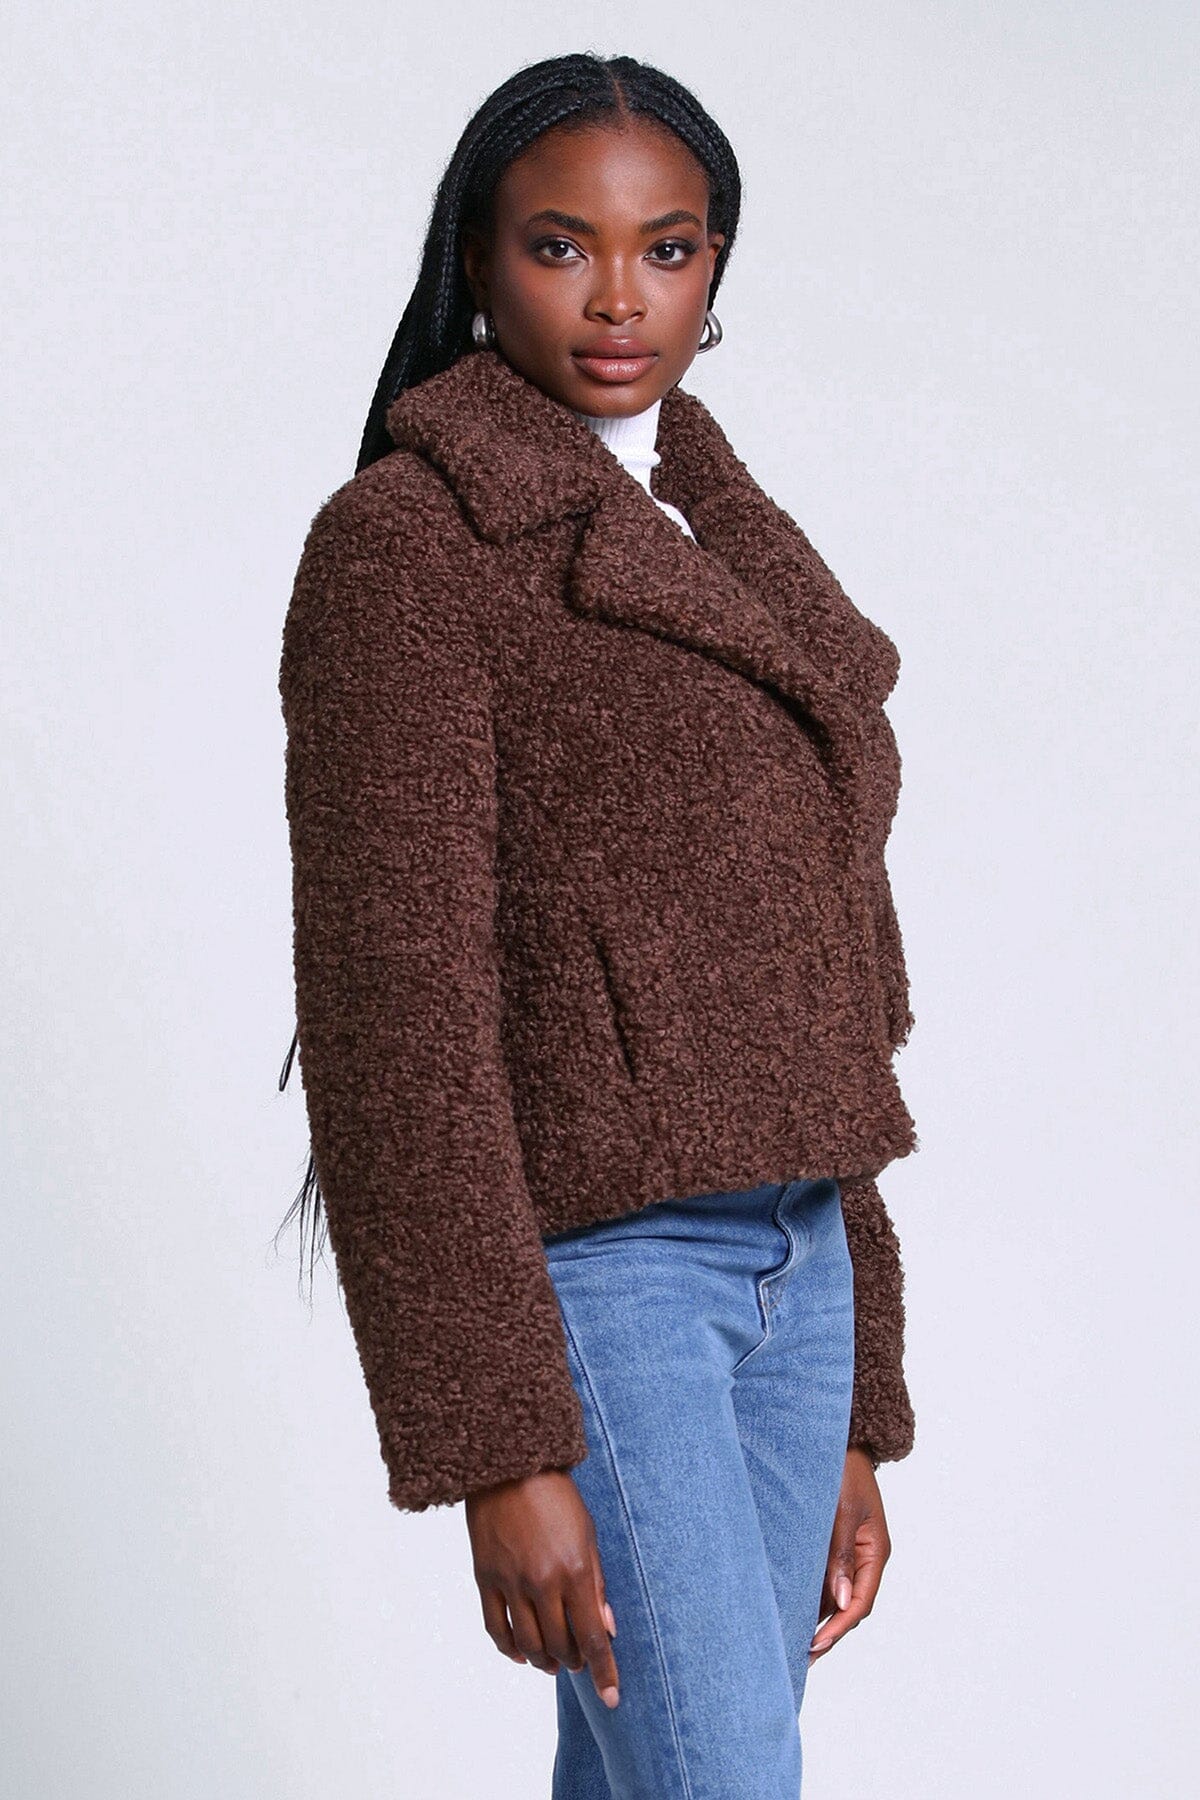 Brown teddy faux fur jacket coat best women's warm fall winter coats jackets 